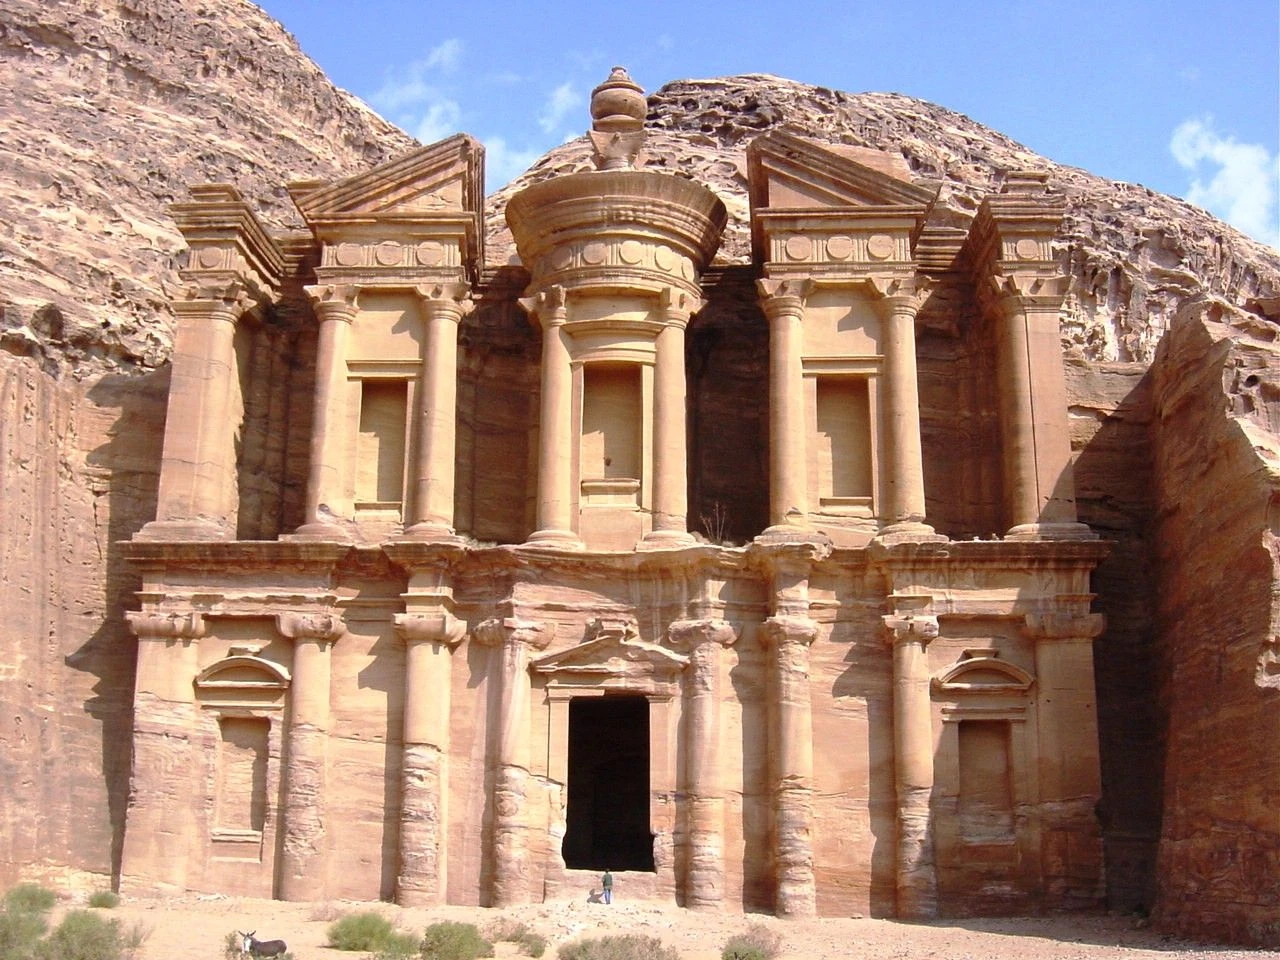 Descubre las maravillas arquitectónicas de la ciudad de Petra en Jordania